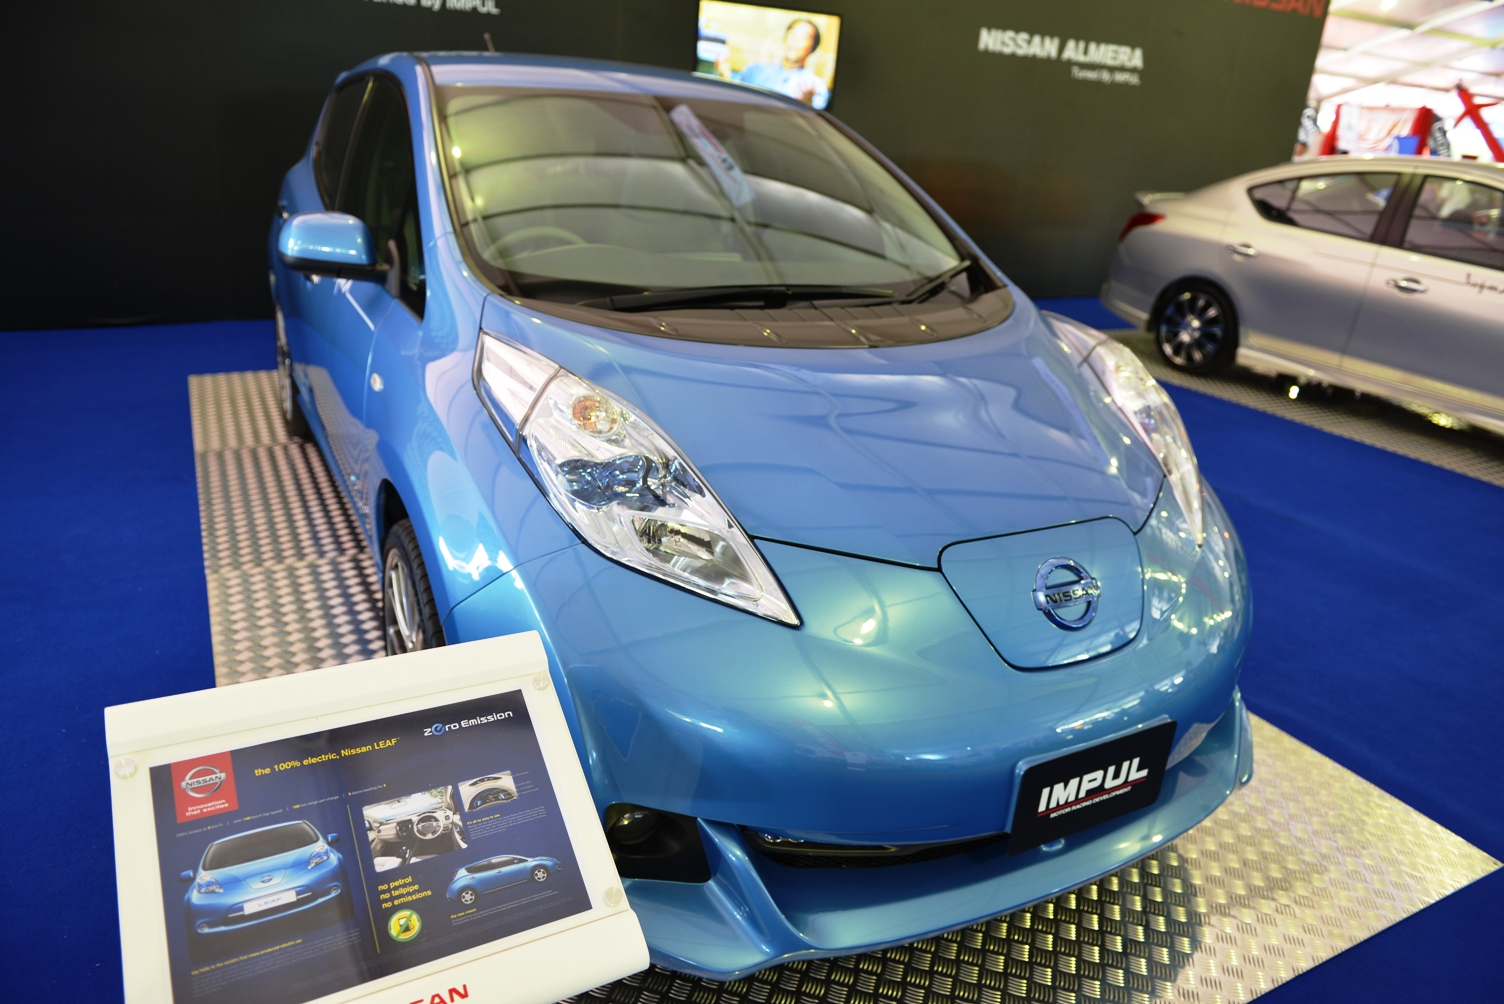 ASIAN AUTO DIGEST: Nissan Leaf Impul Edition Eco Friendly 